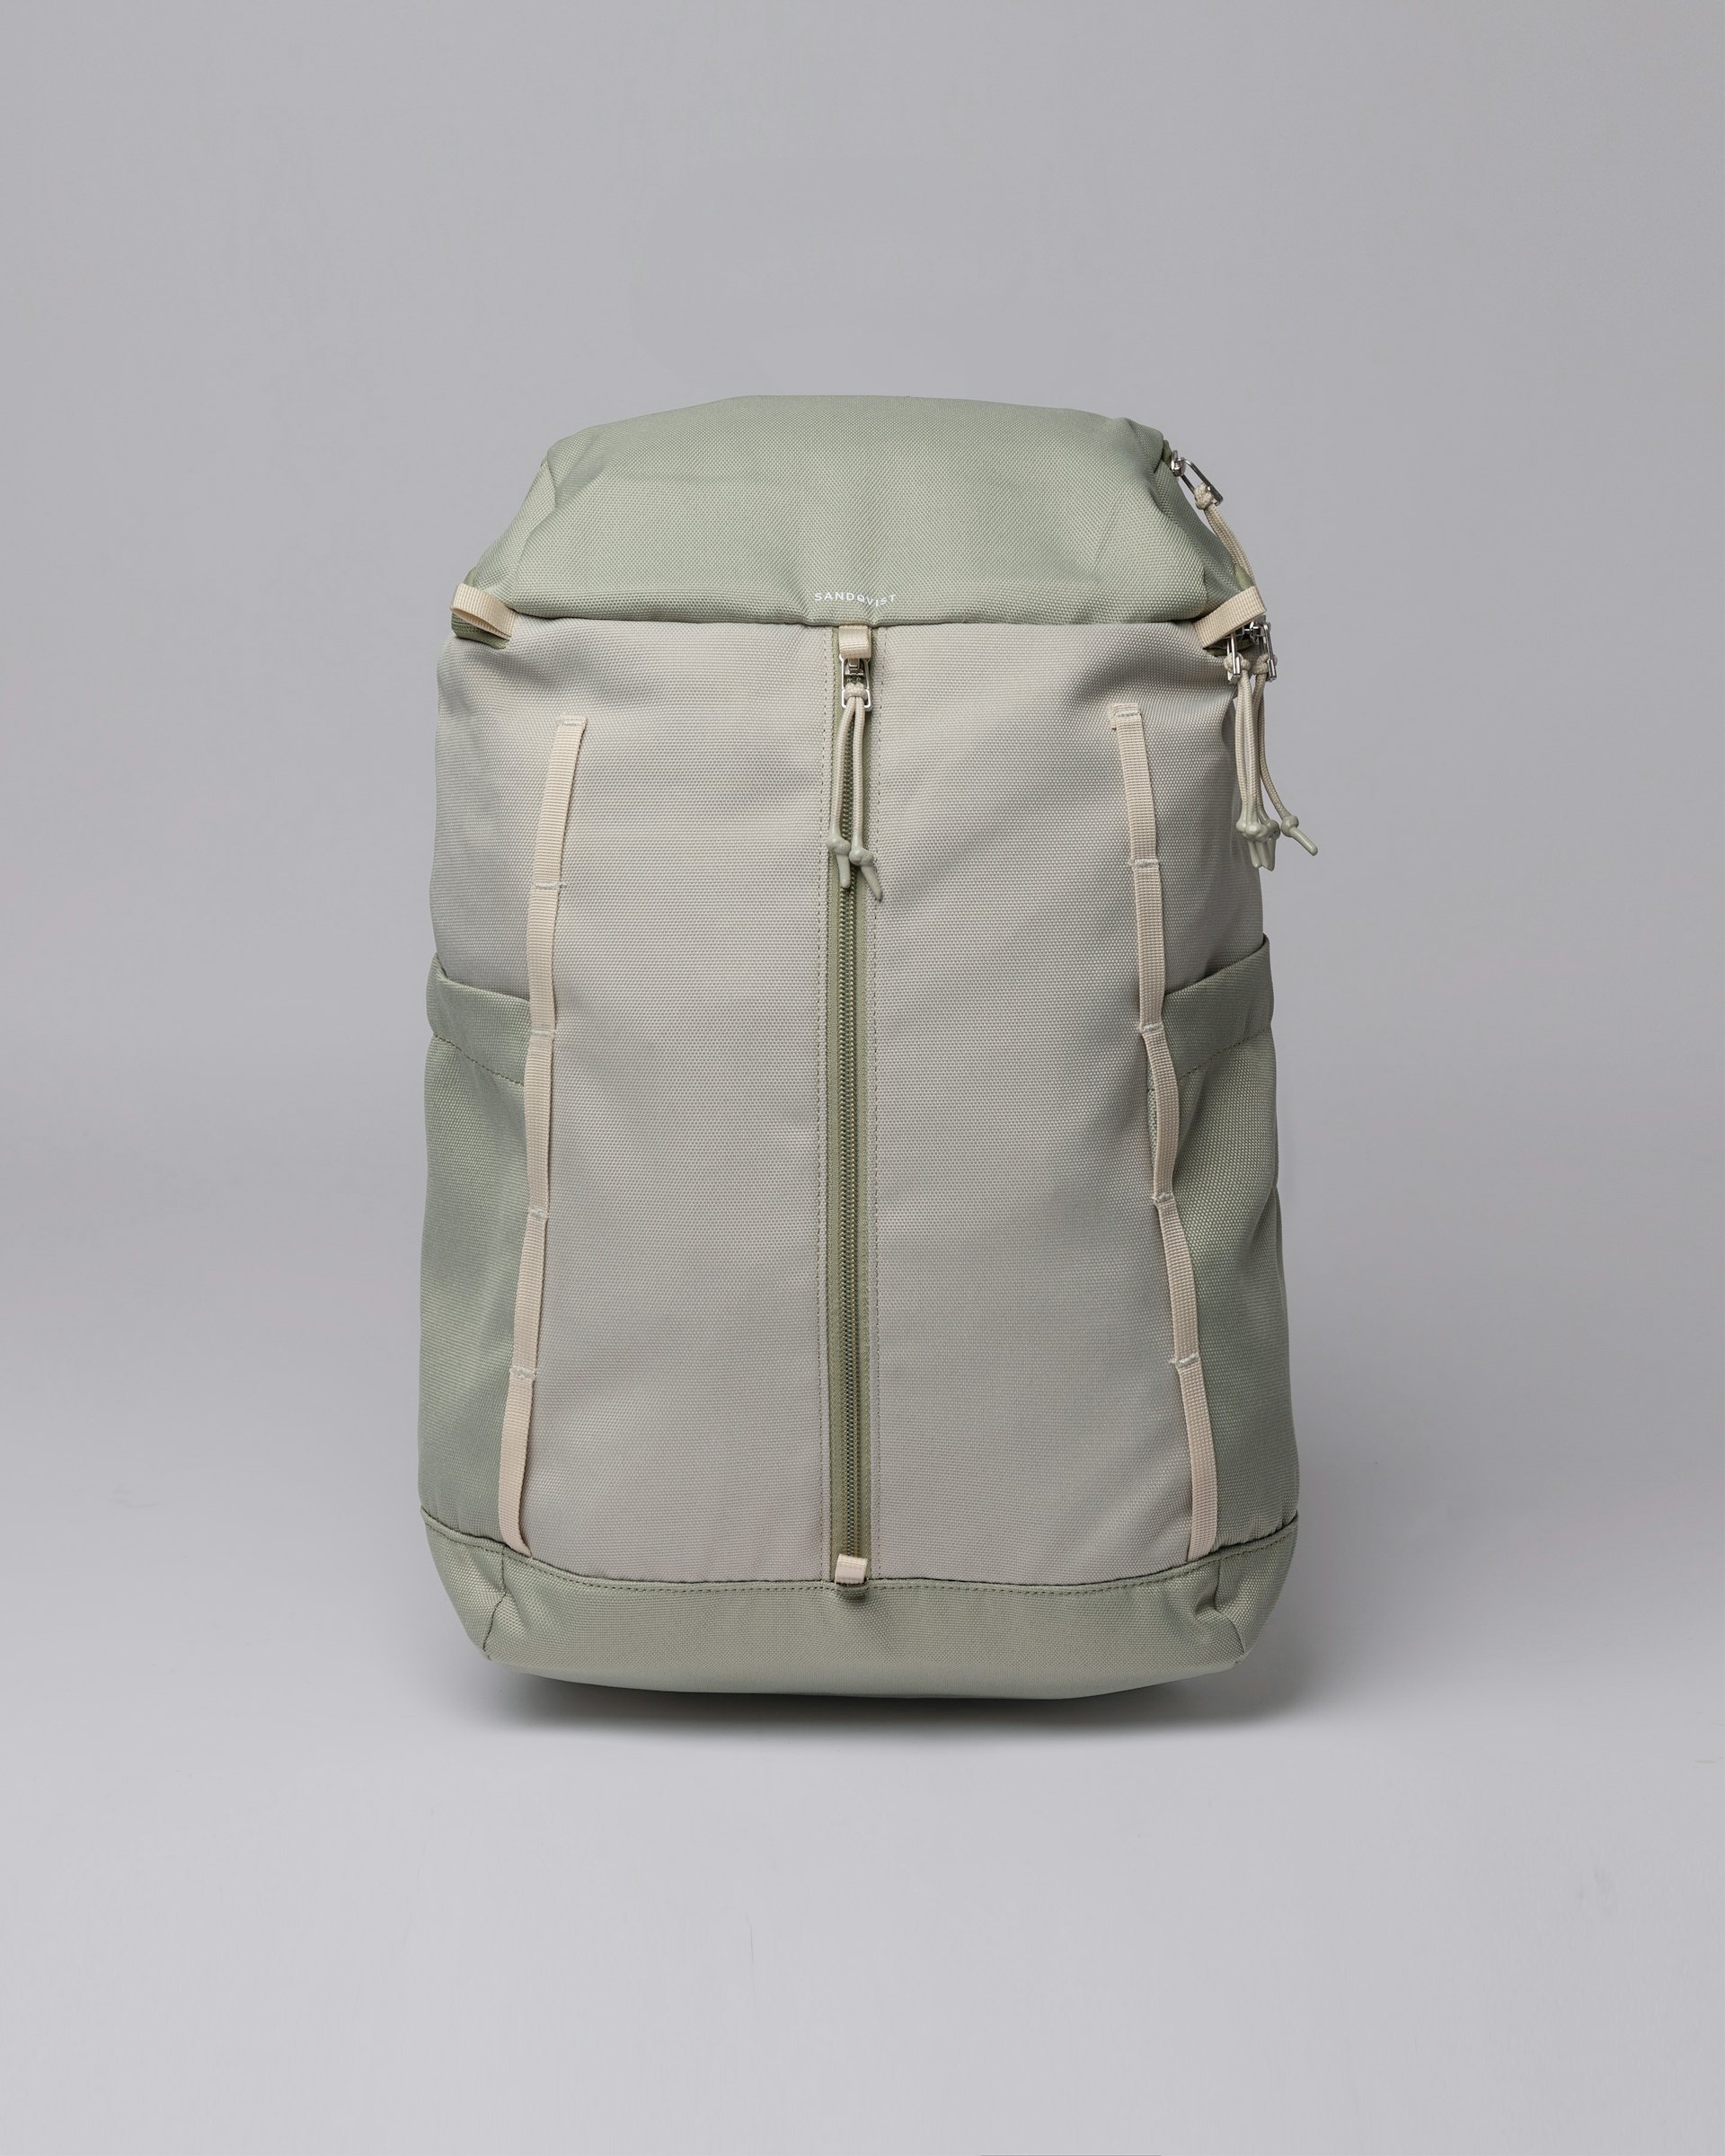 Sune gehört zur kategorie Backpacks und ist farbig pale birch light